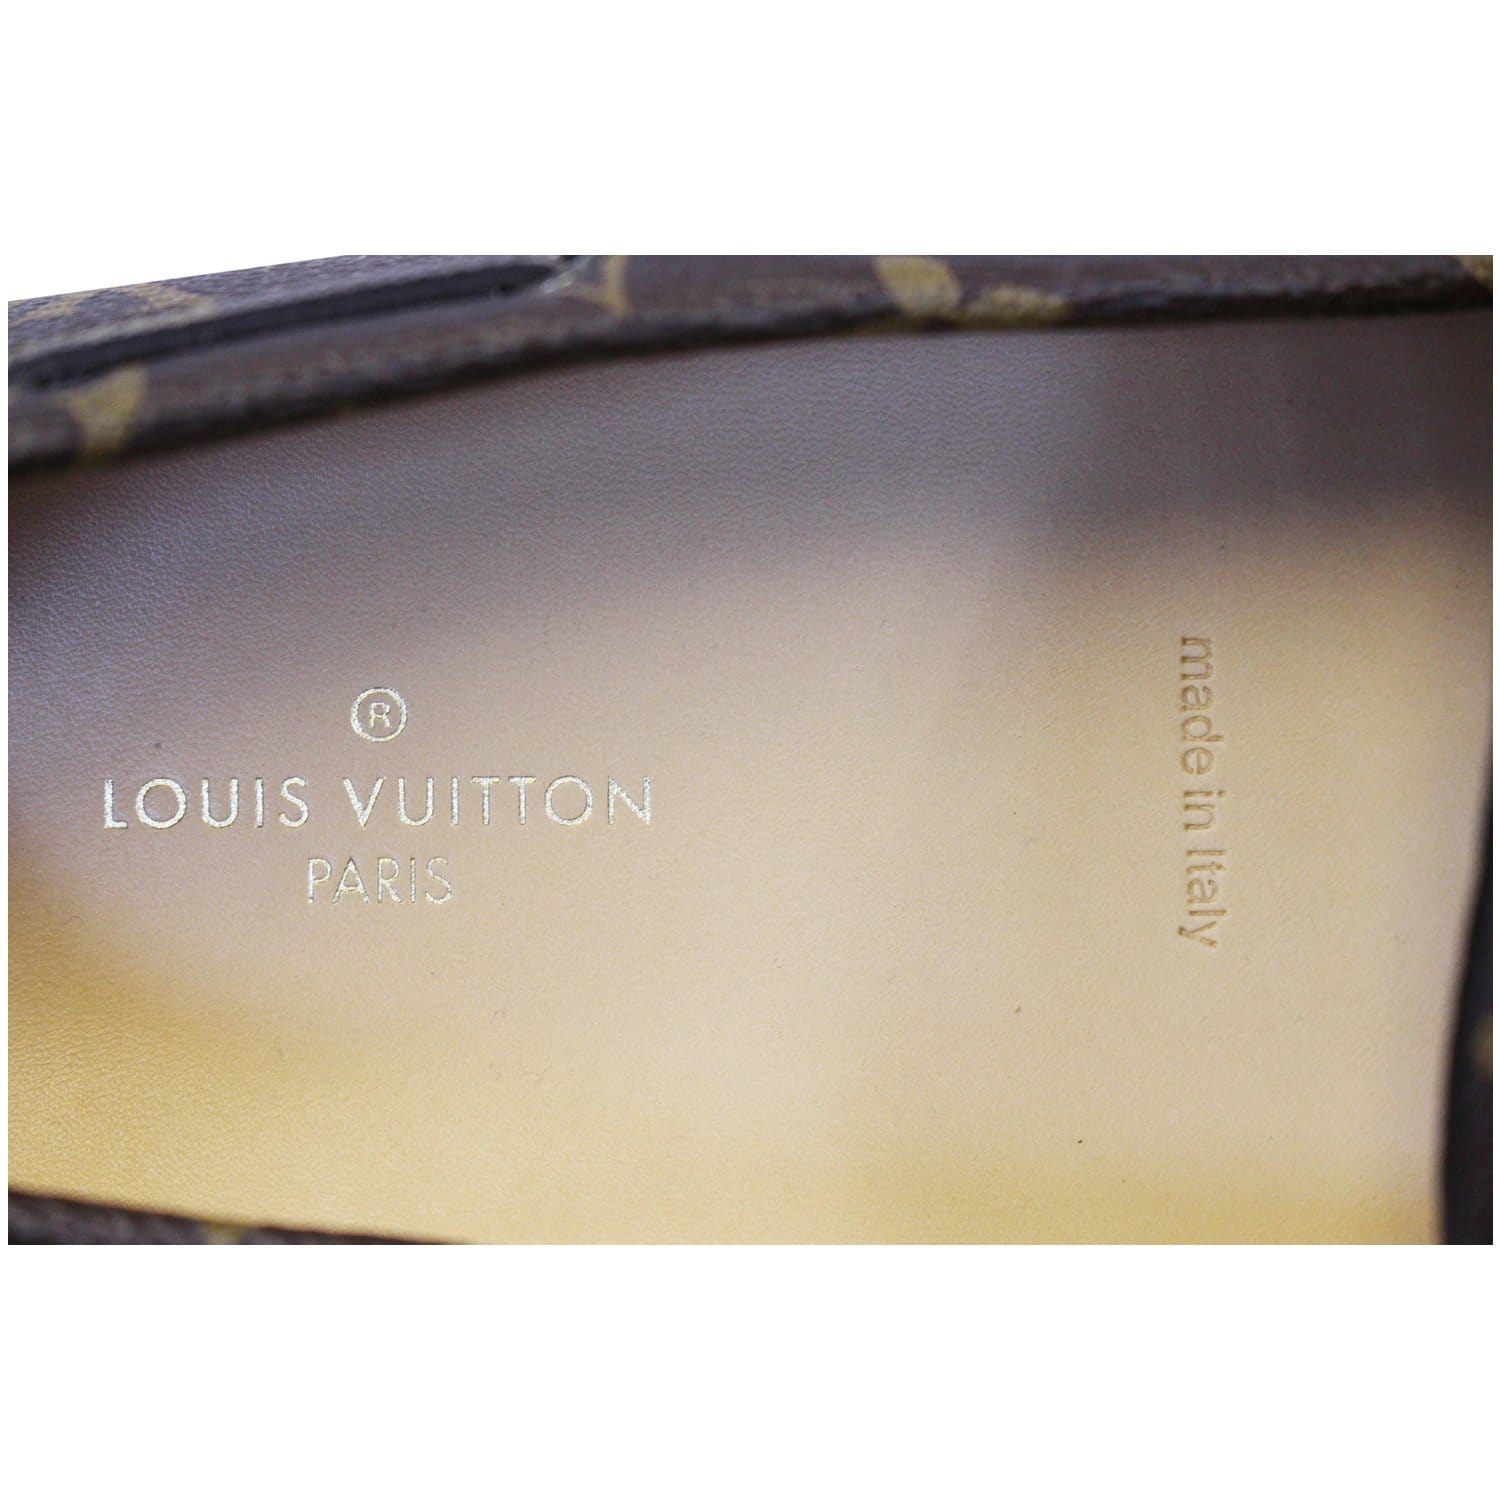 Replica Louis Vuitton Arizona Moccasin In Monogram Canvas for Sale